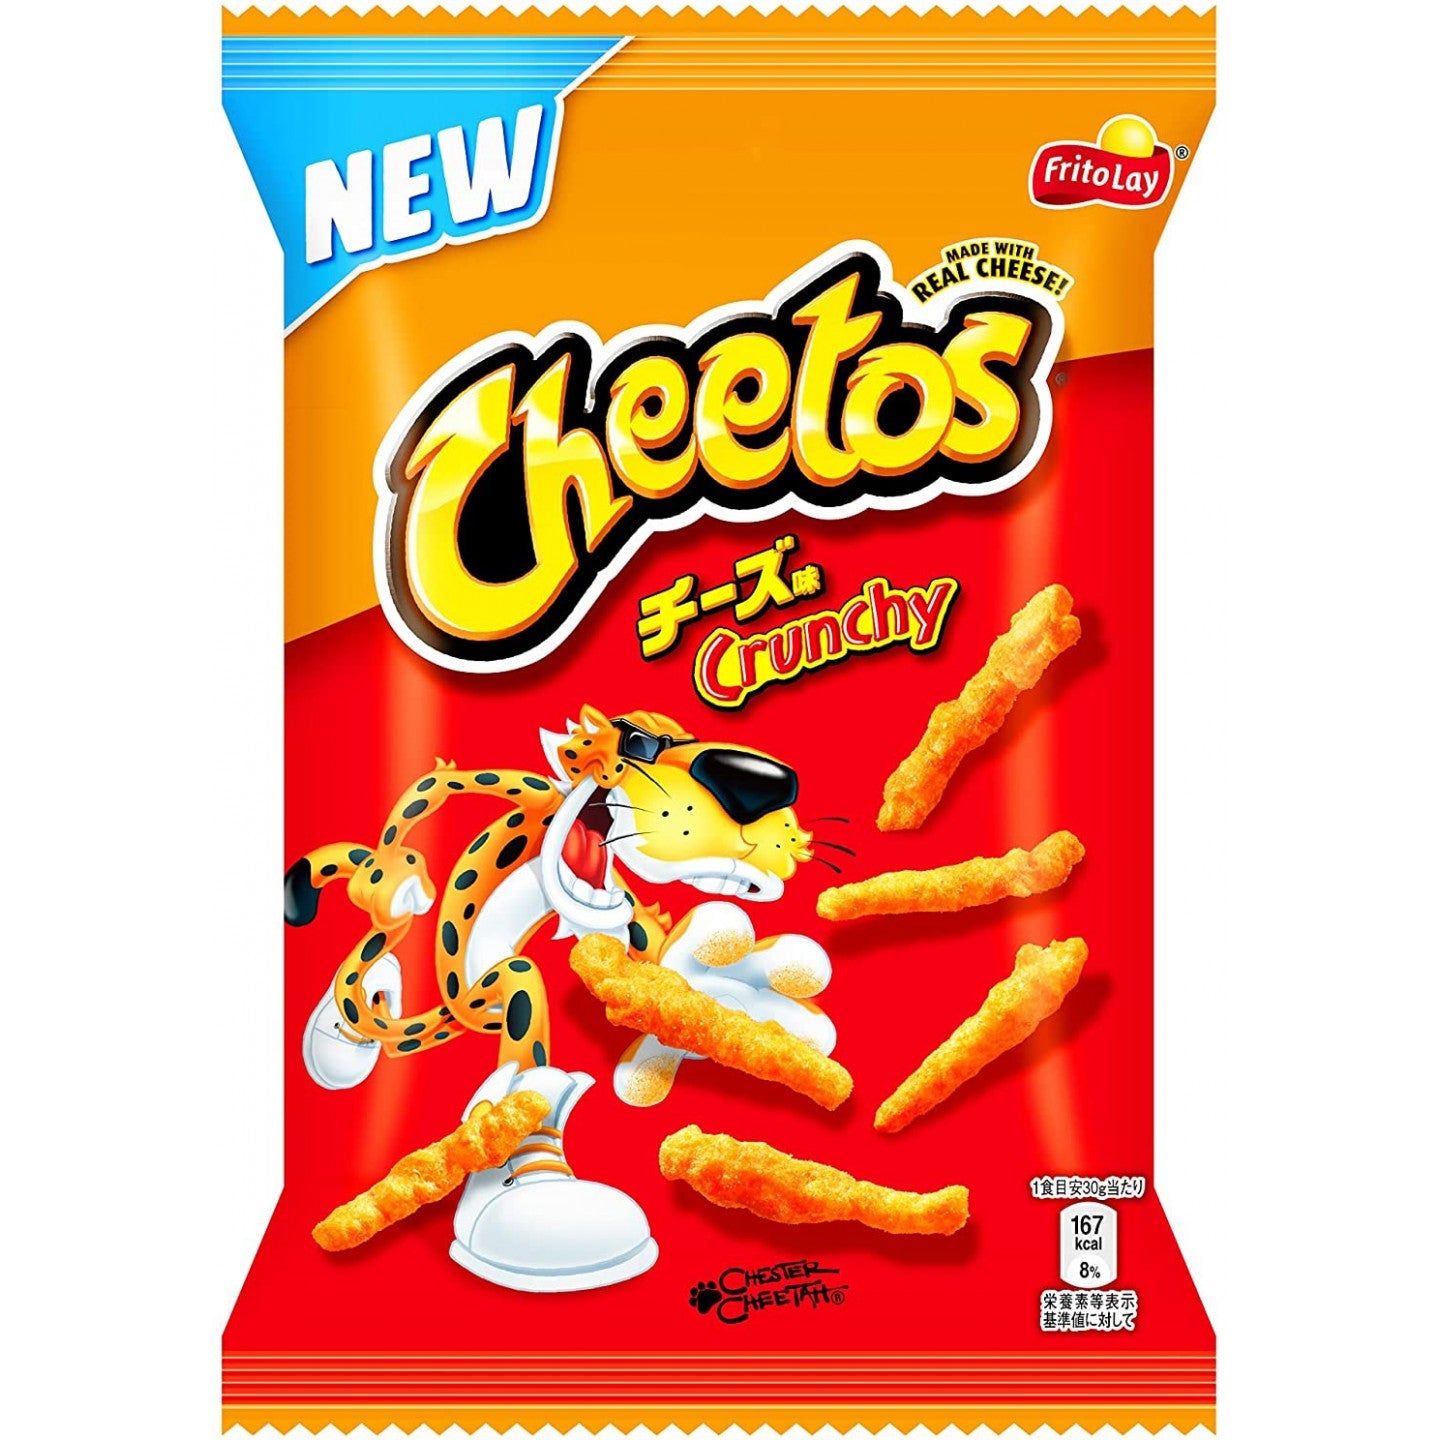 Cheetos Crunchy Cheese (Japan) (75g)